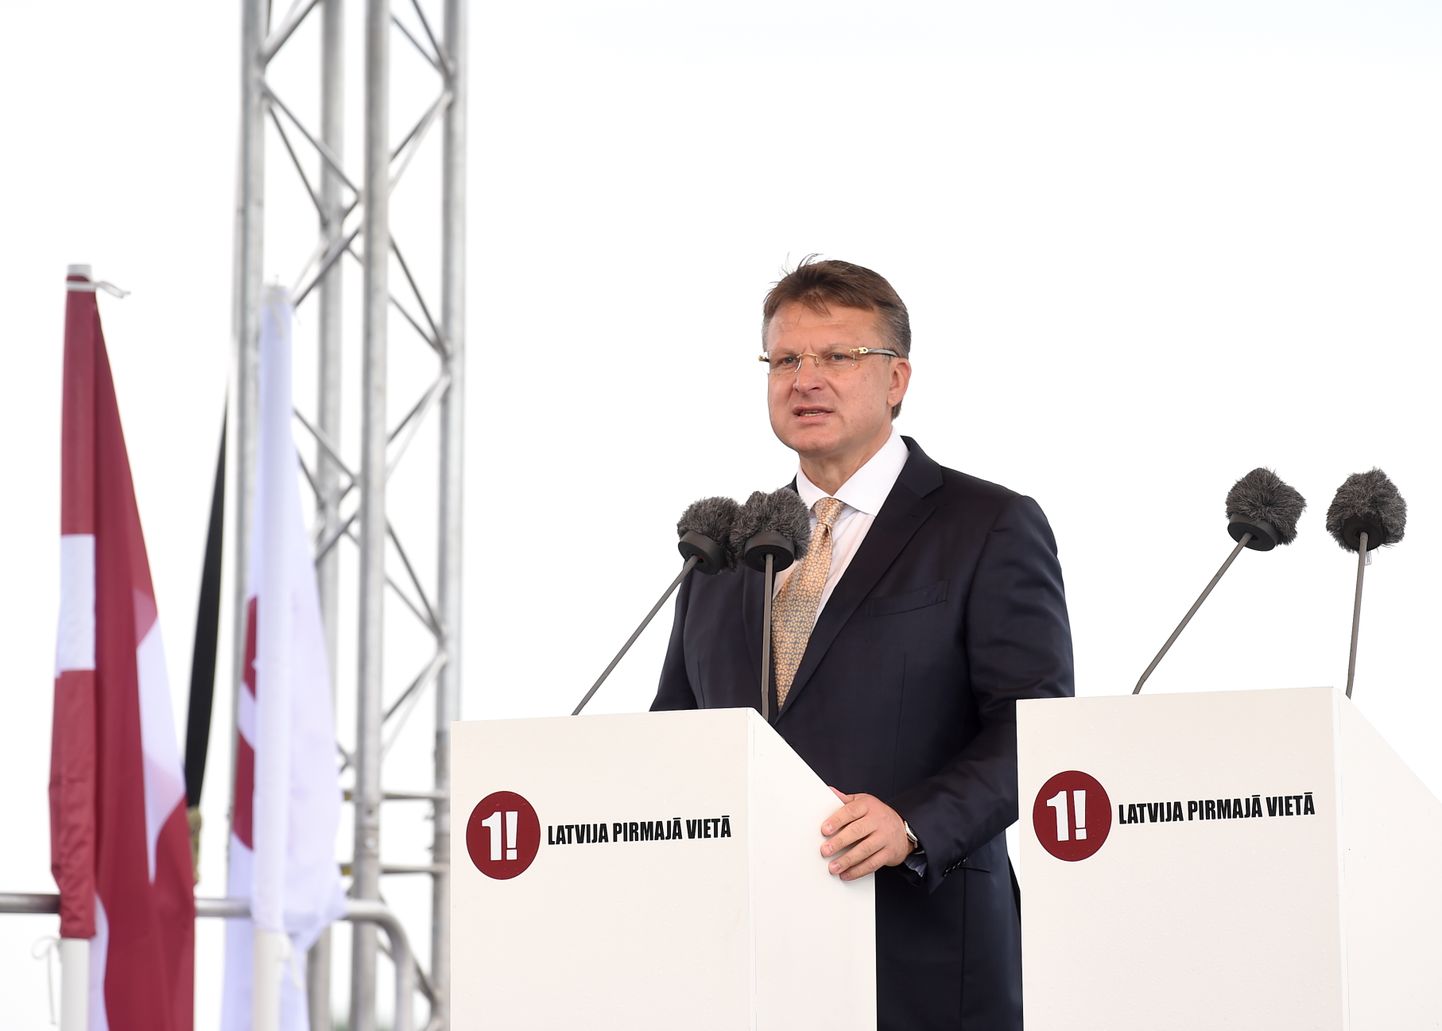 Politiķis Ainārs Šlesers saka uzrunu partijas "Latvija pirmajā vietā" (LPV) dibināšanas kongresā.